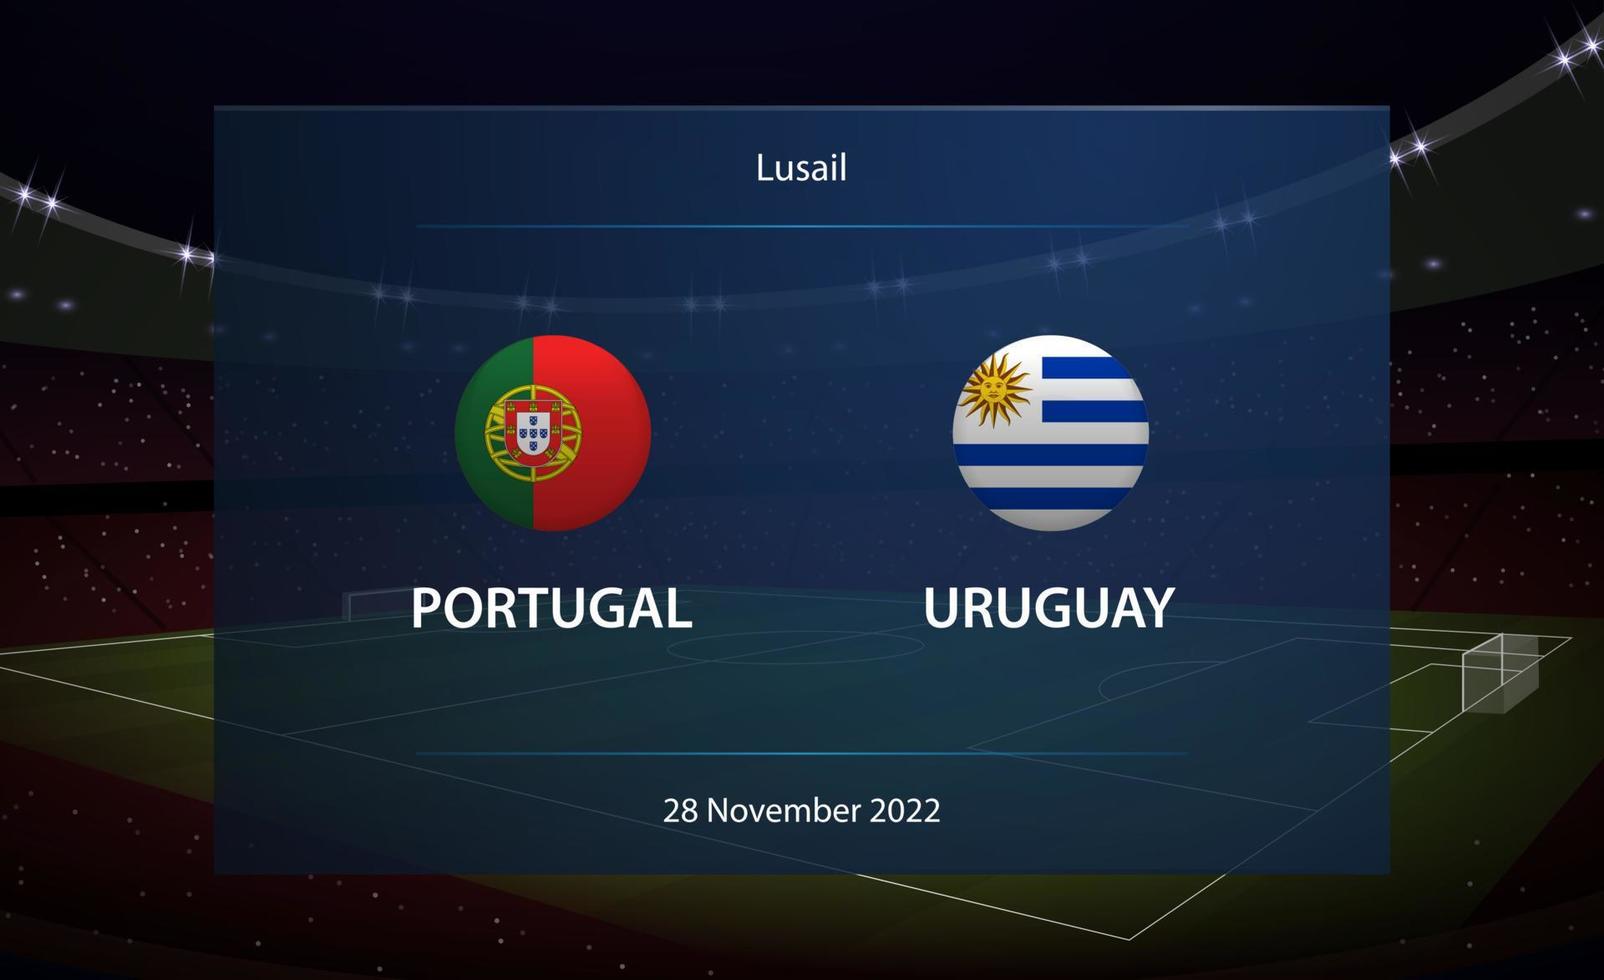 Portugal vs Uruguay. Football scoreboard broadcast graphic vector